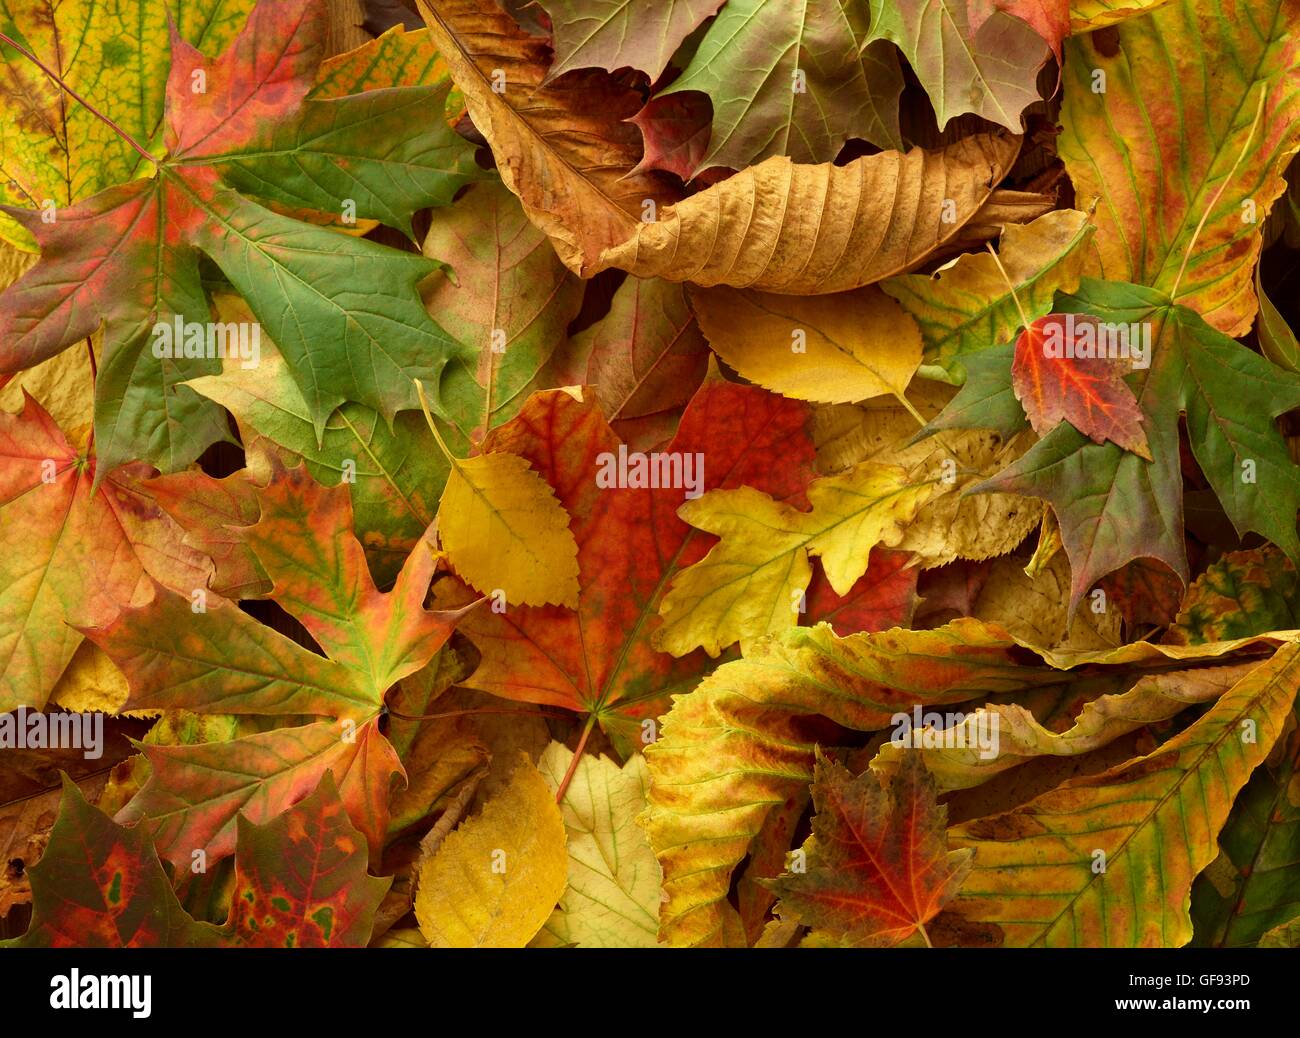 Autumn leaves, full frame. Stock Photo